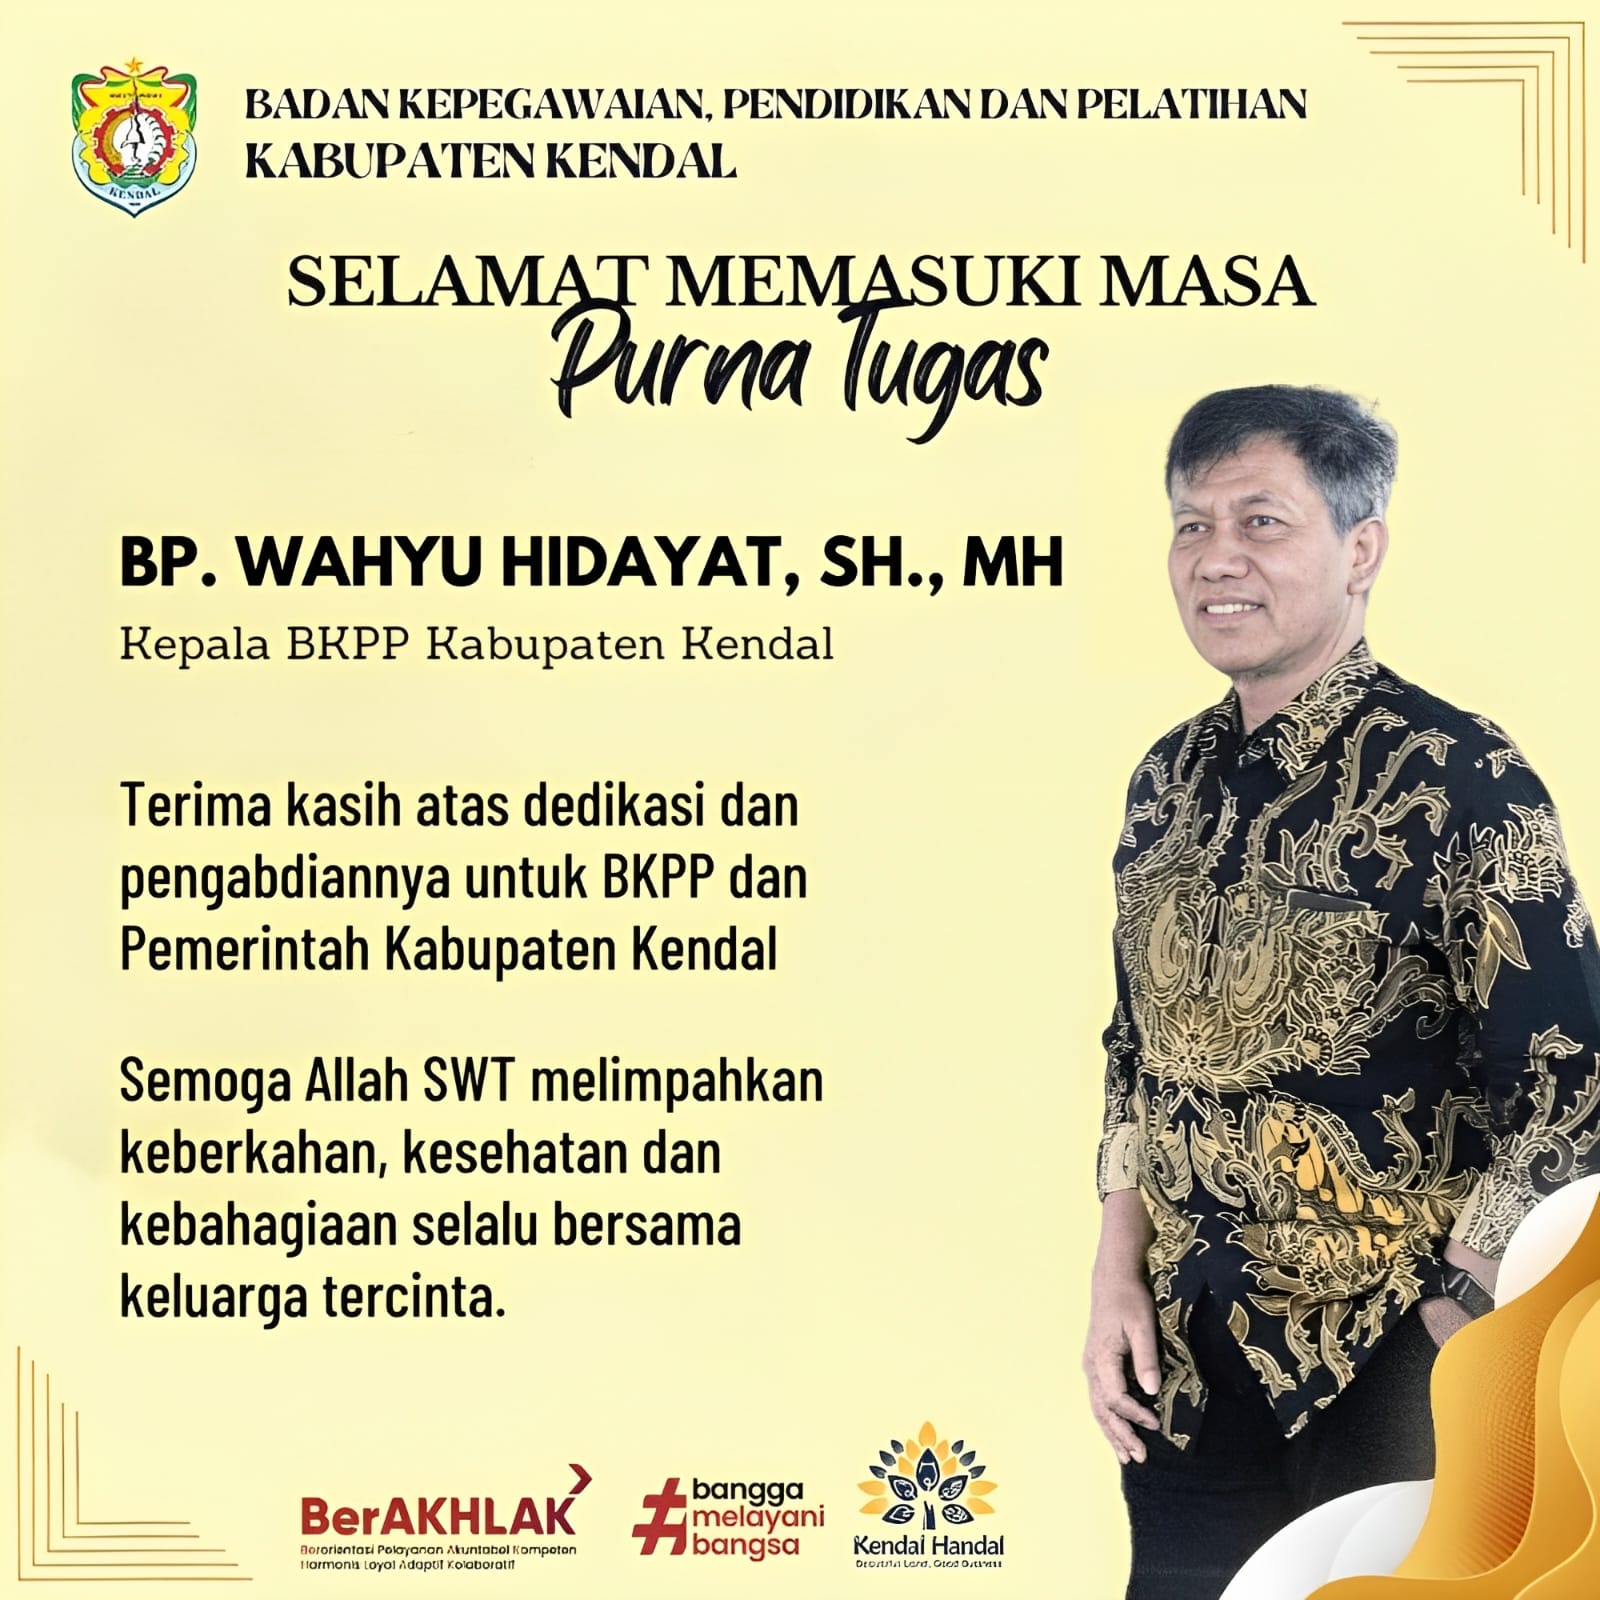 Selamat Memasuki Masa Purna Tugas Bapak Wahyu Hidayat, SH.,MH